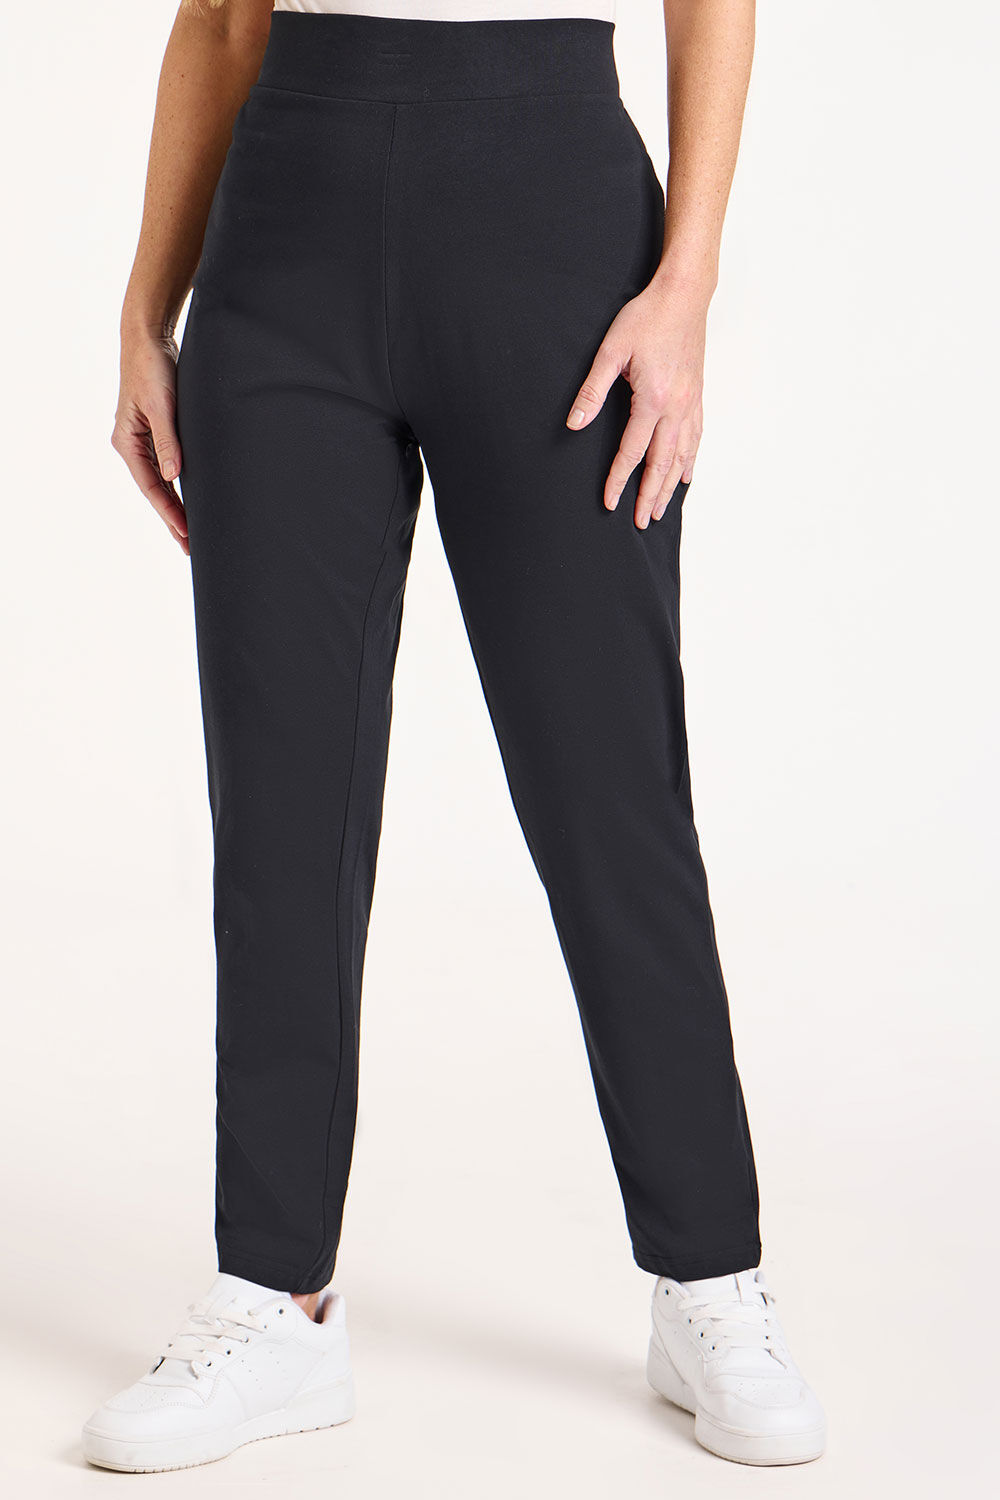 Bonmarche Short Yoga Pants - Black - Size 14